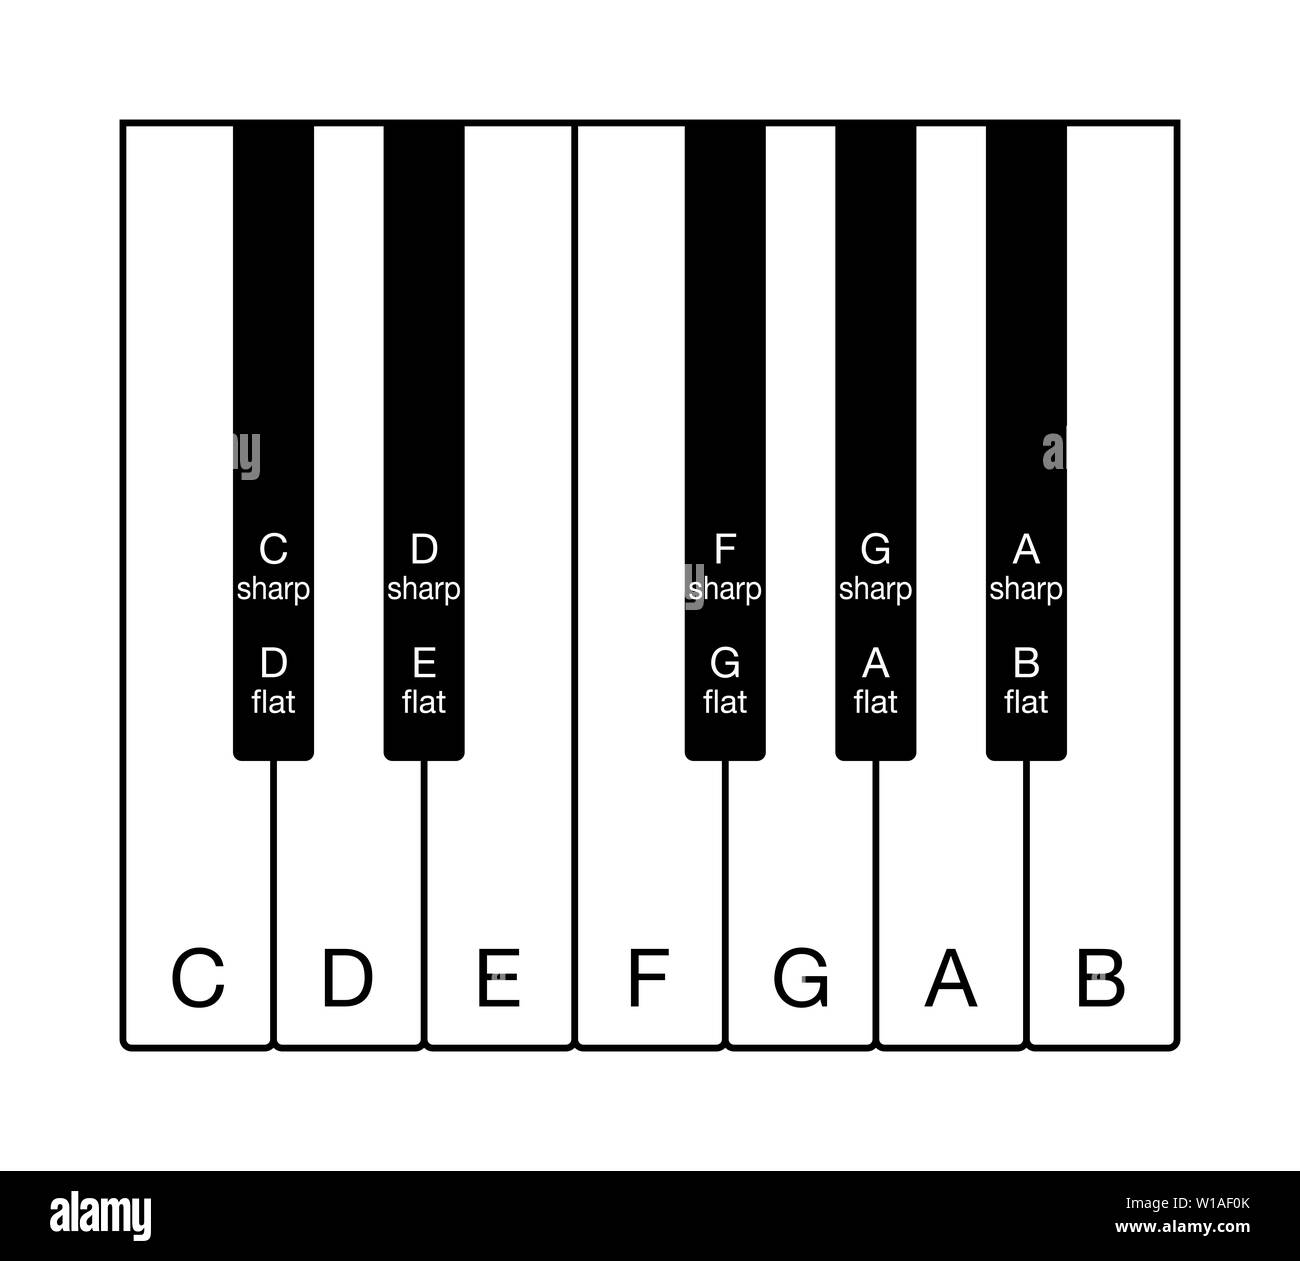 Doce tonos de la escala cromática en un teclado. Una octava de notas de la escala musical occidental. Doce claves de C a B con nombres de notas en inglés. Foto de stock